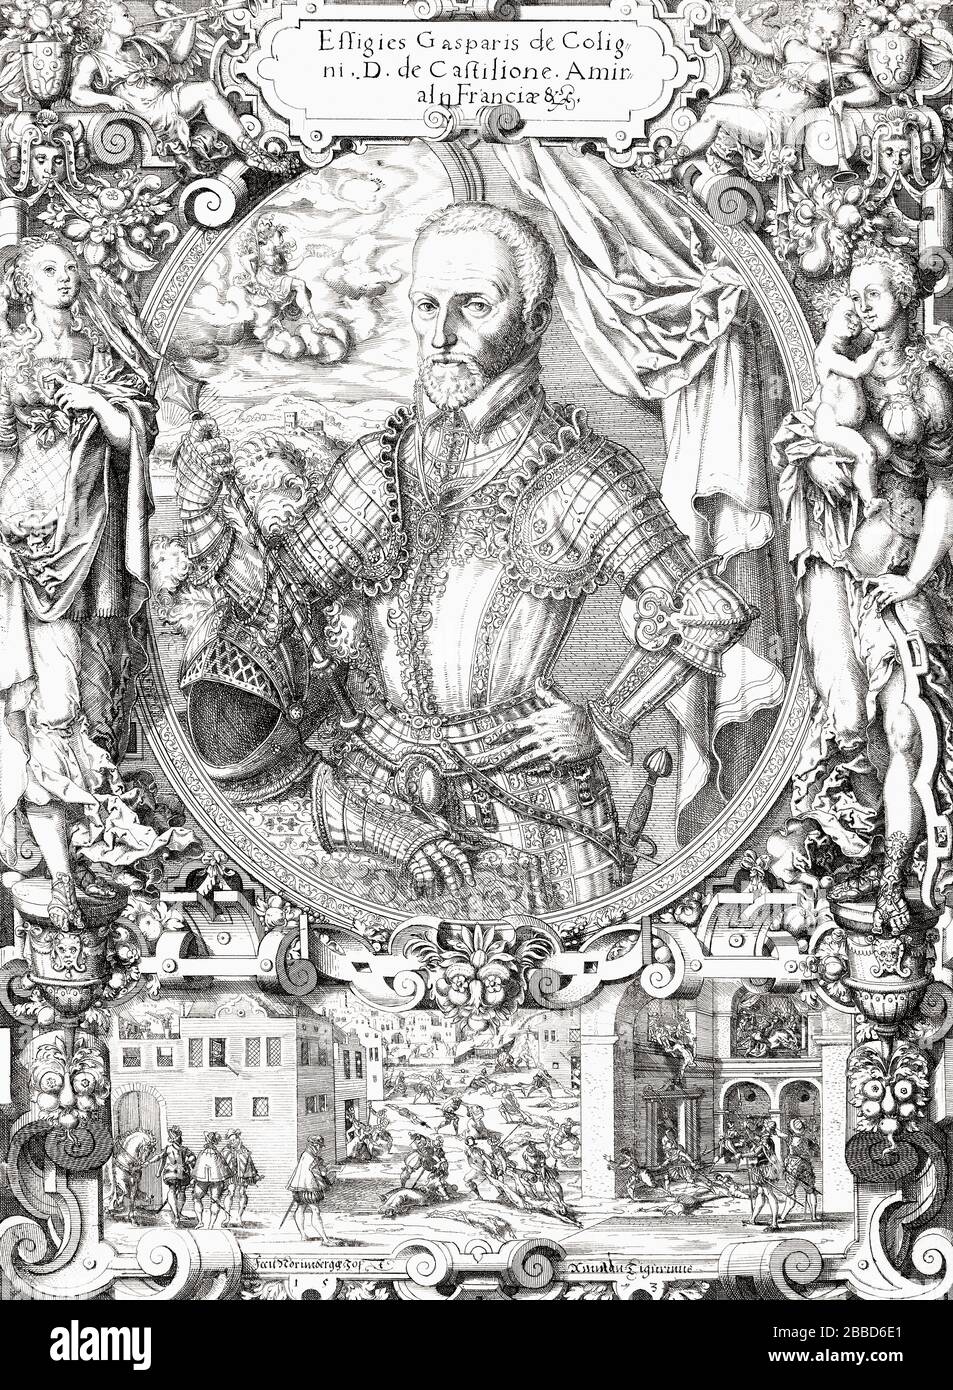 Gaspard de Coligny, Seigneur de Châtillon, 1519 – 1572. Contremaître français. Il était amiral de France et chef Huguenot pendant les guerres de religion françaises. Banque D'Images